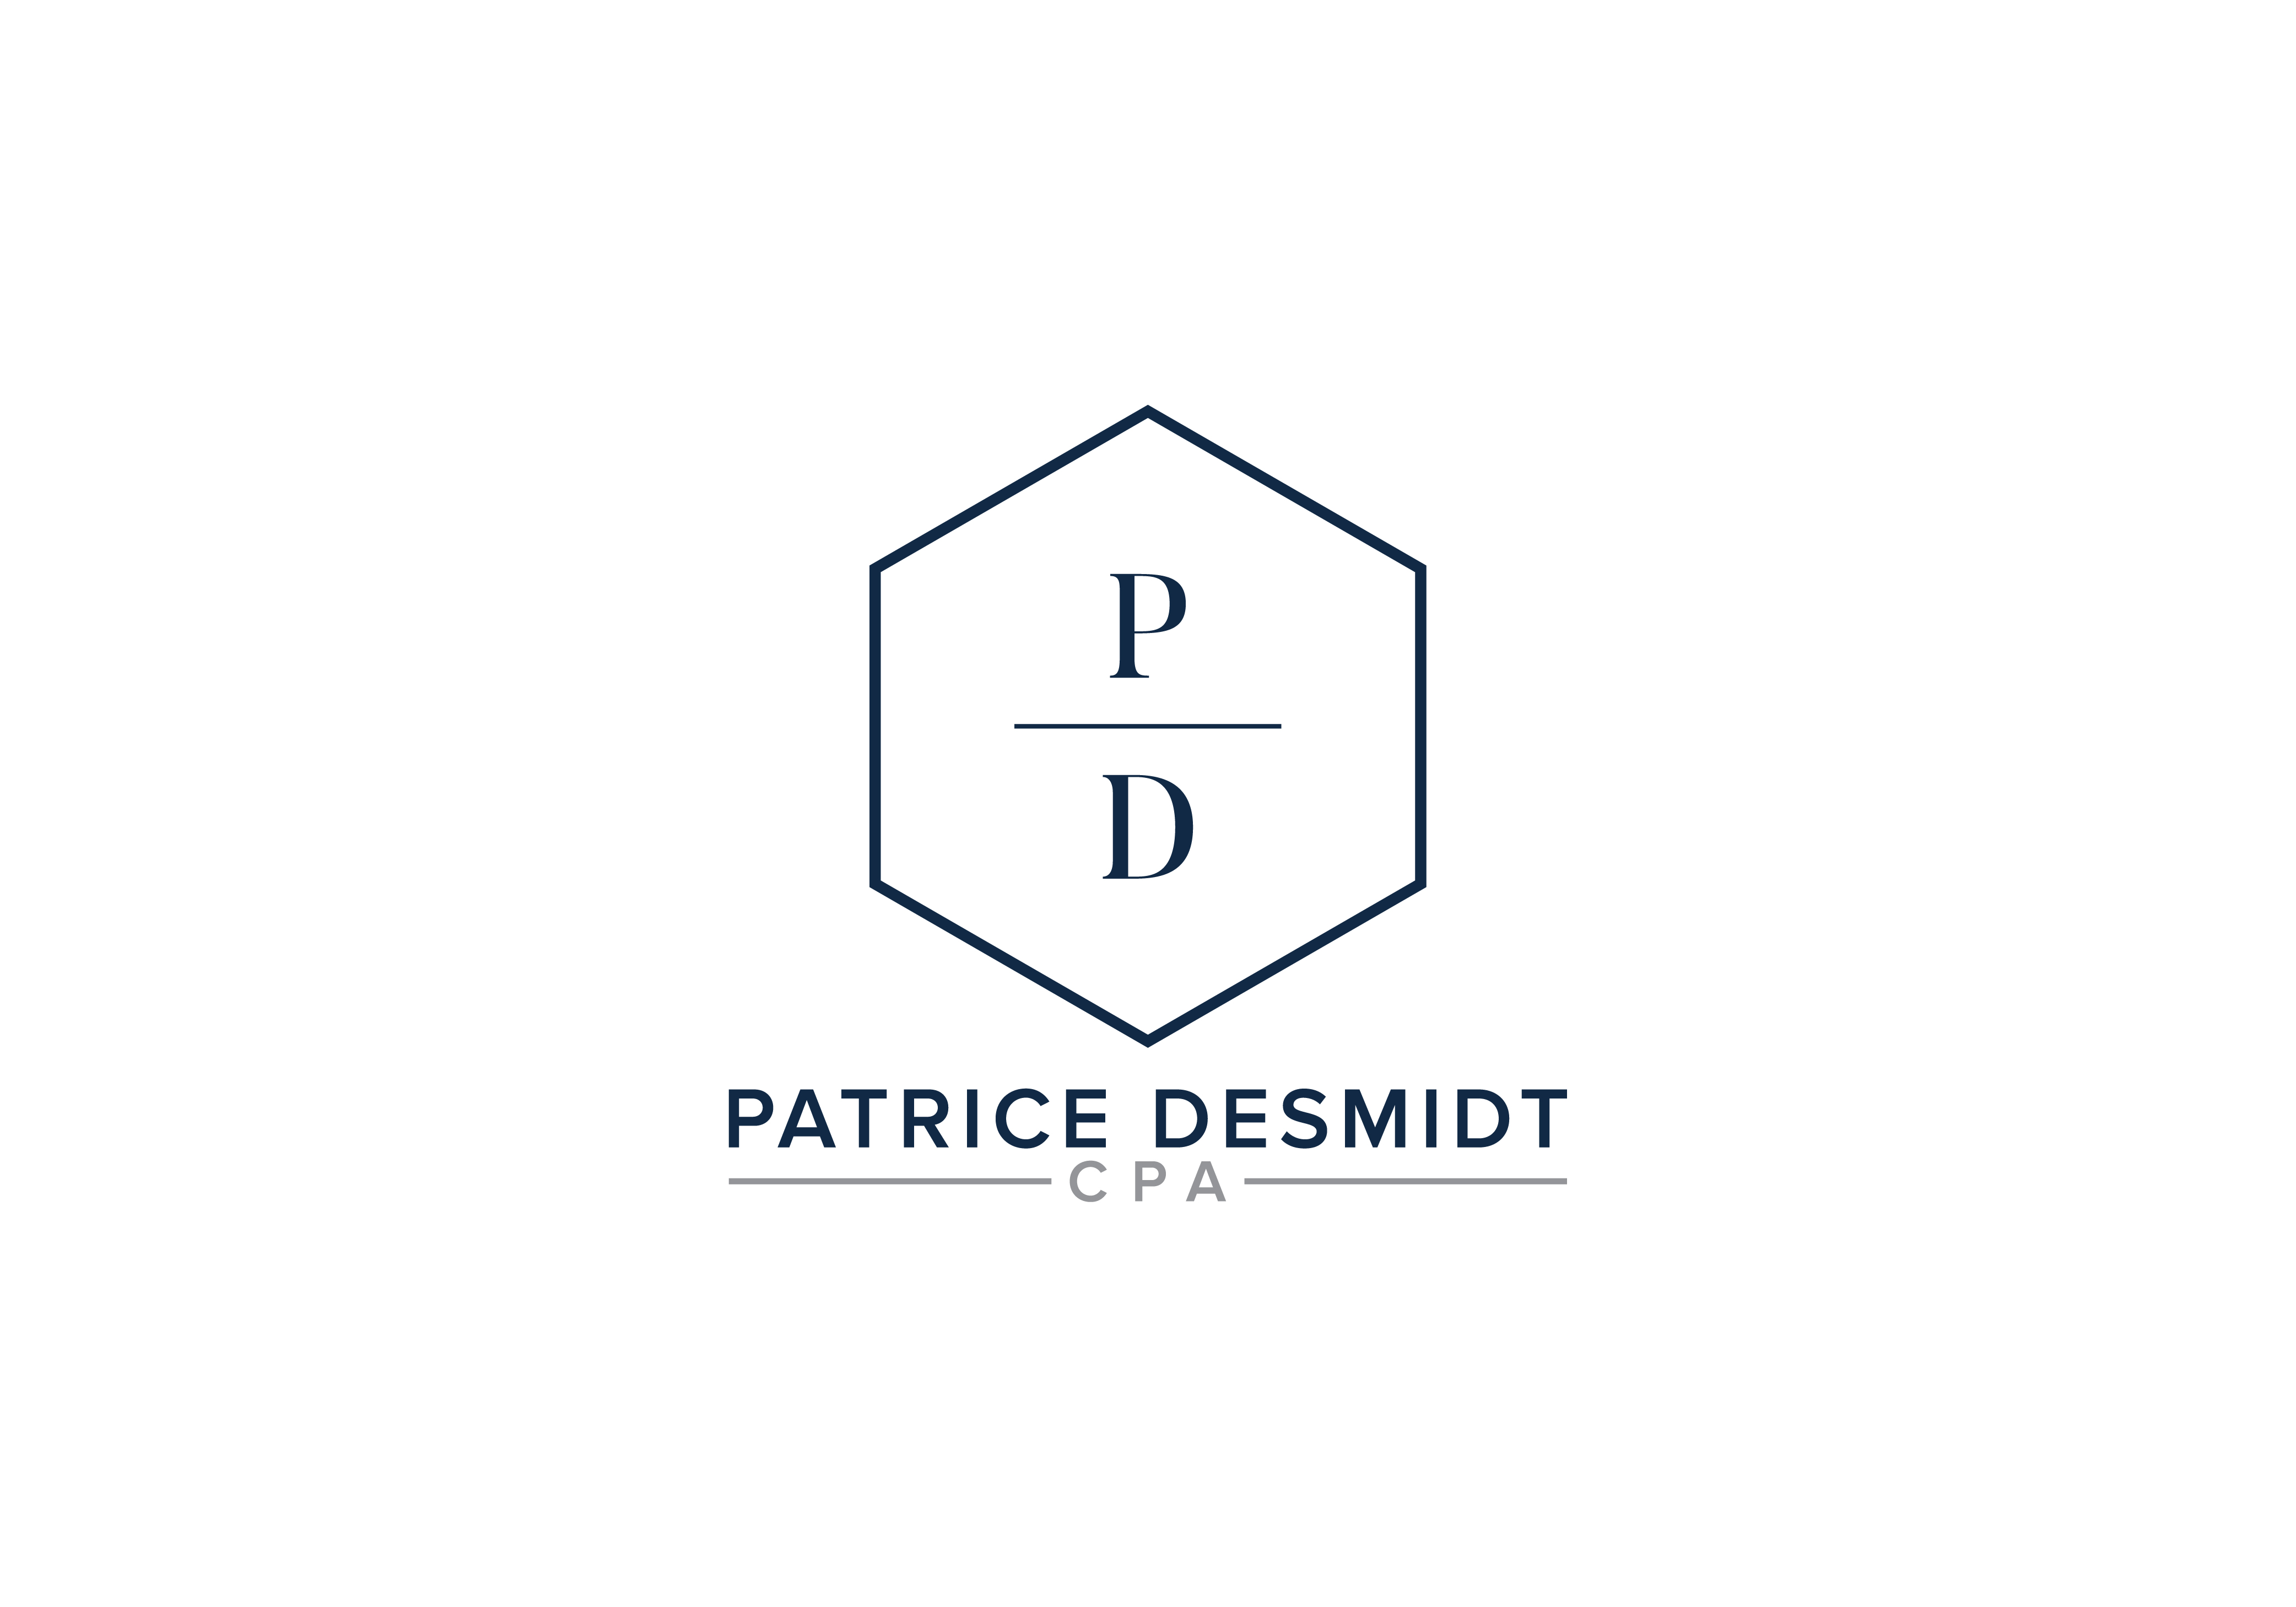 Patrice Desmidt CPA inc.